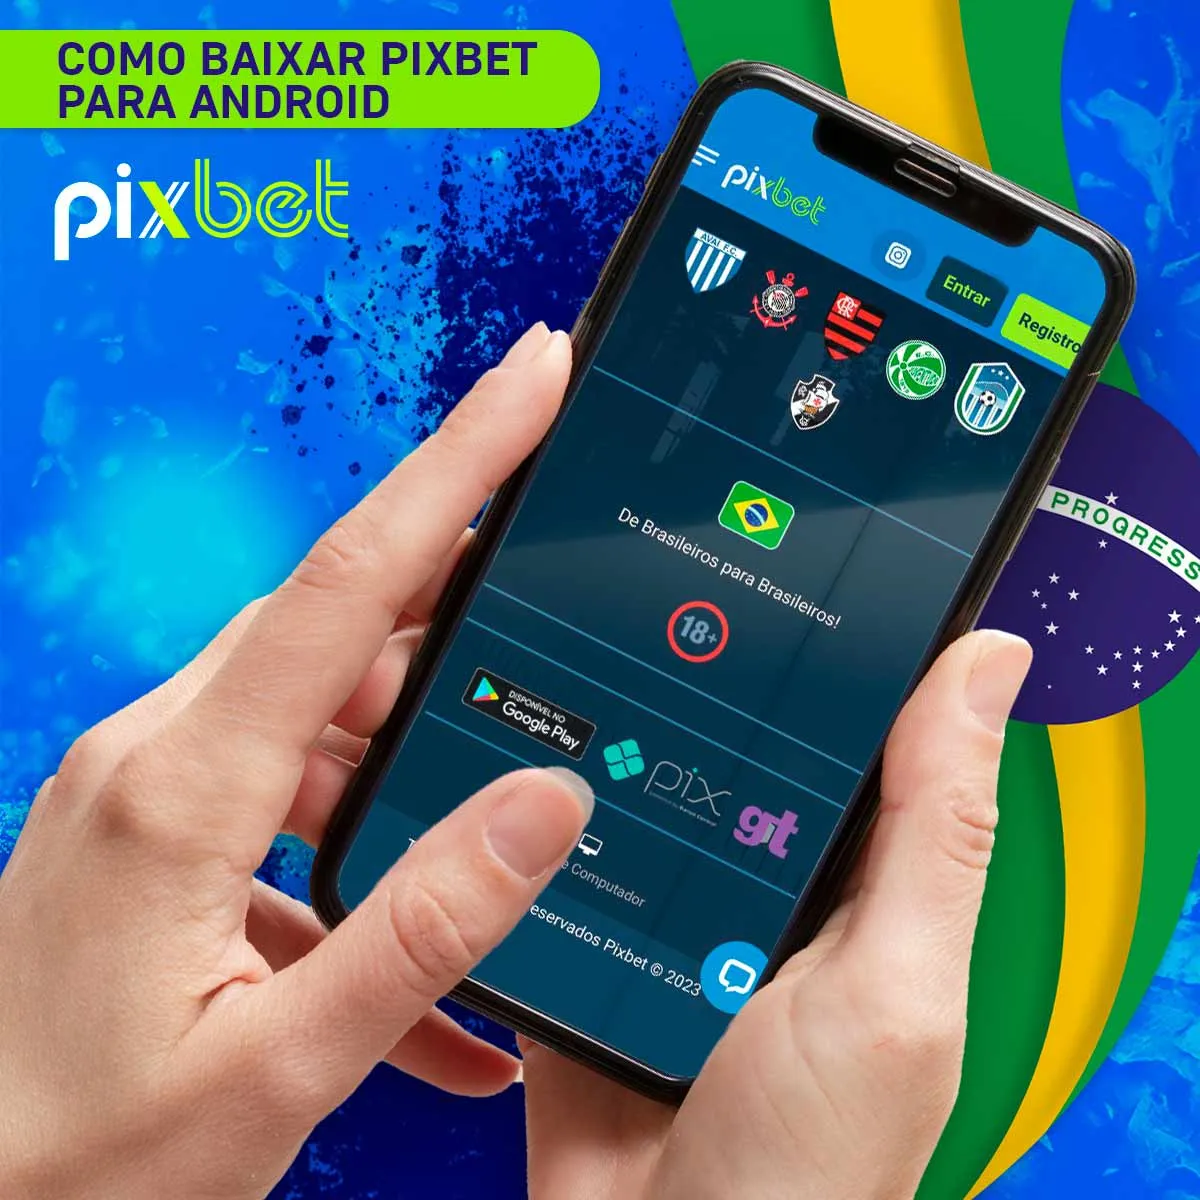 Instruções para instalar a aplicação móvel para Android da casa de apostas Pixbet no Brasil